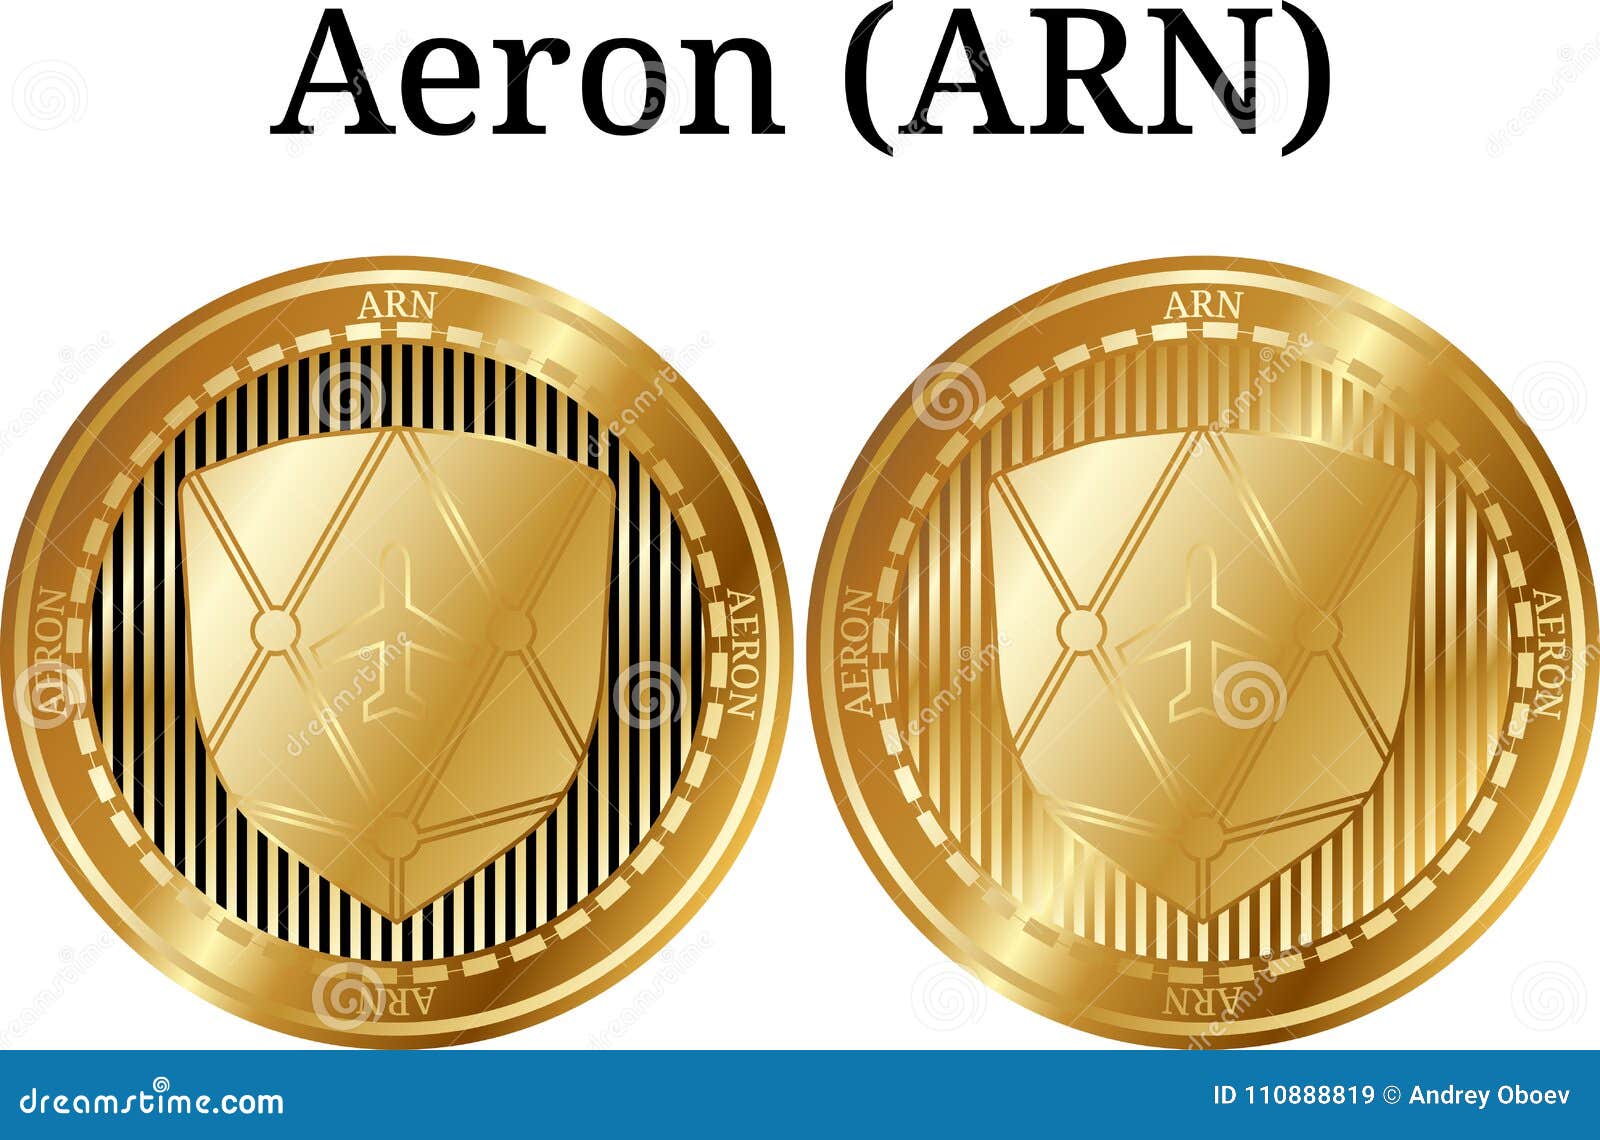 arn crypto coin